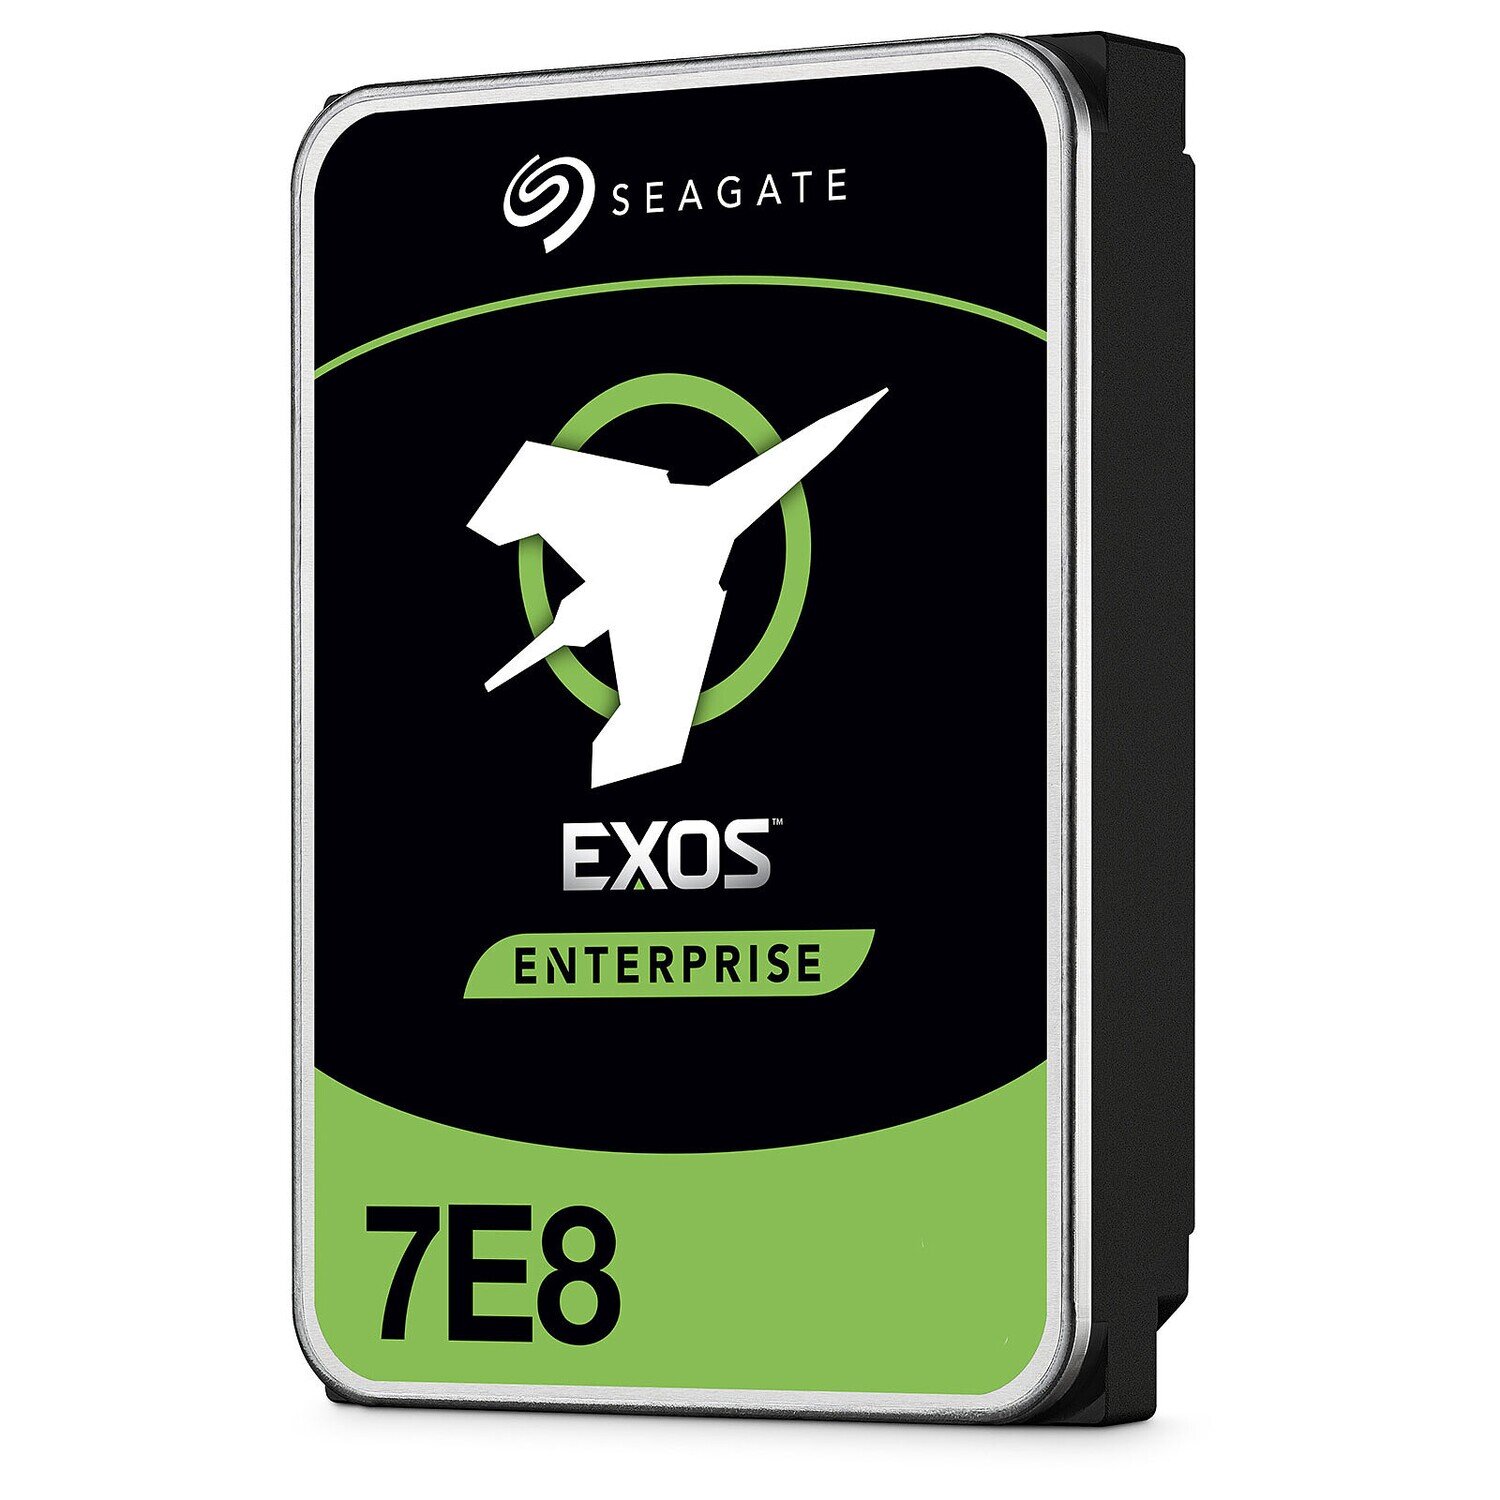 Seagate Exos 7E8 2TB HDD 3.5" 7200RPM (ST2000NM000A)